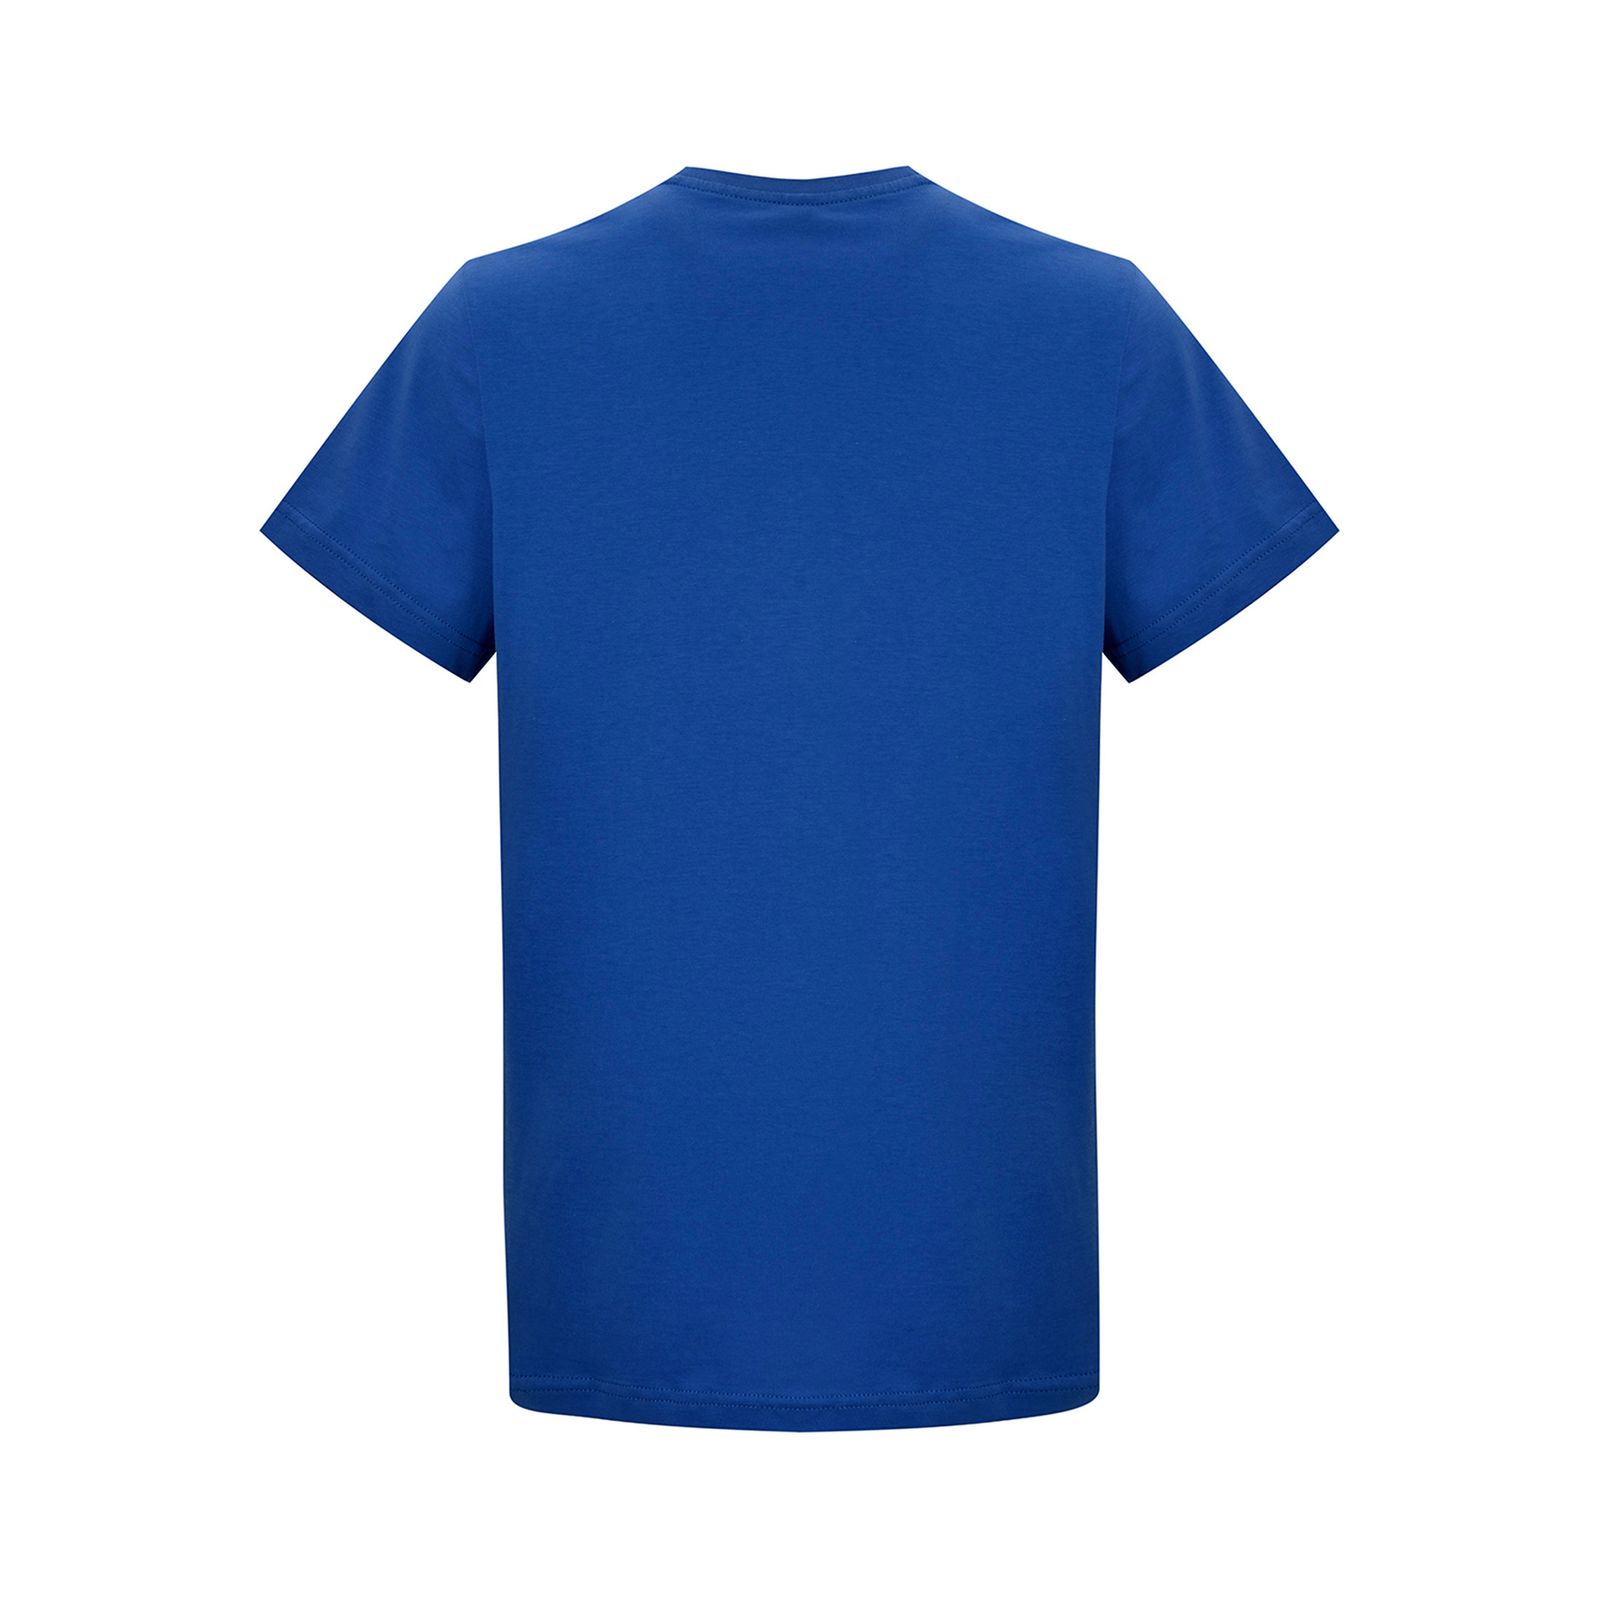 تی شرت آستین کوتاه مردانه بادی اسپینر مدل 11964737 کد 1 رنگ آبی -  - 3